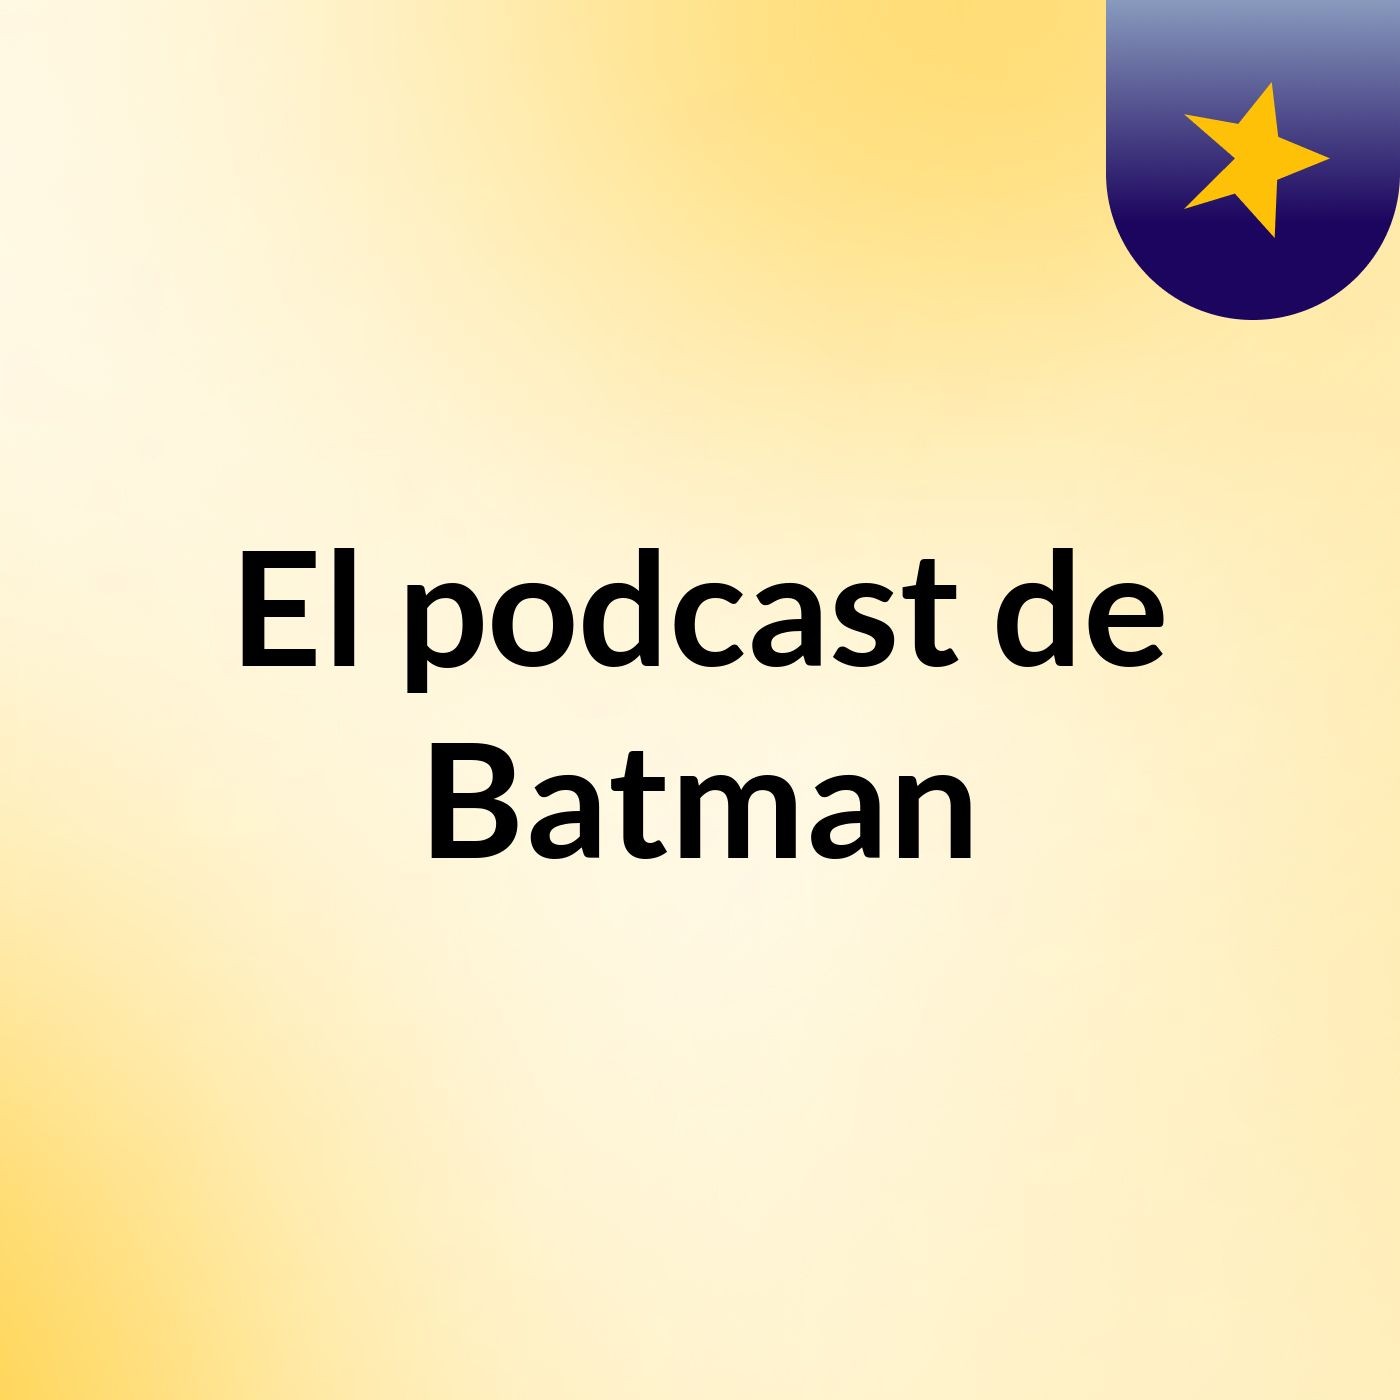 El podcast de Batman